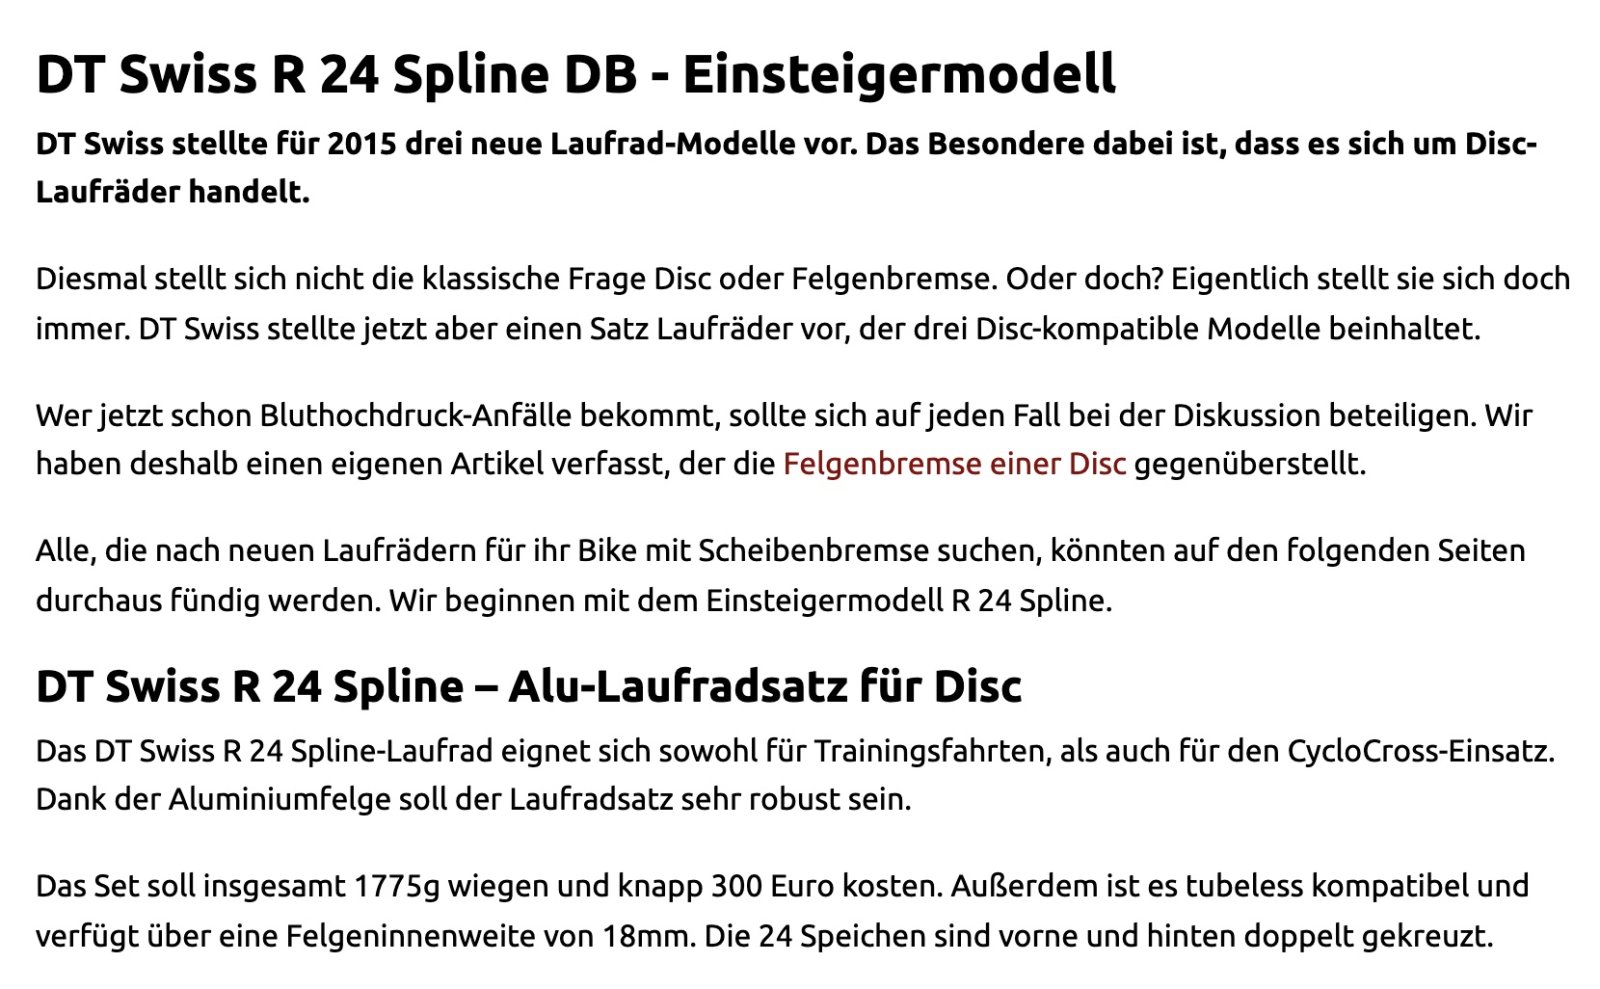 R24 Spline DB von DT Swiss.jpg